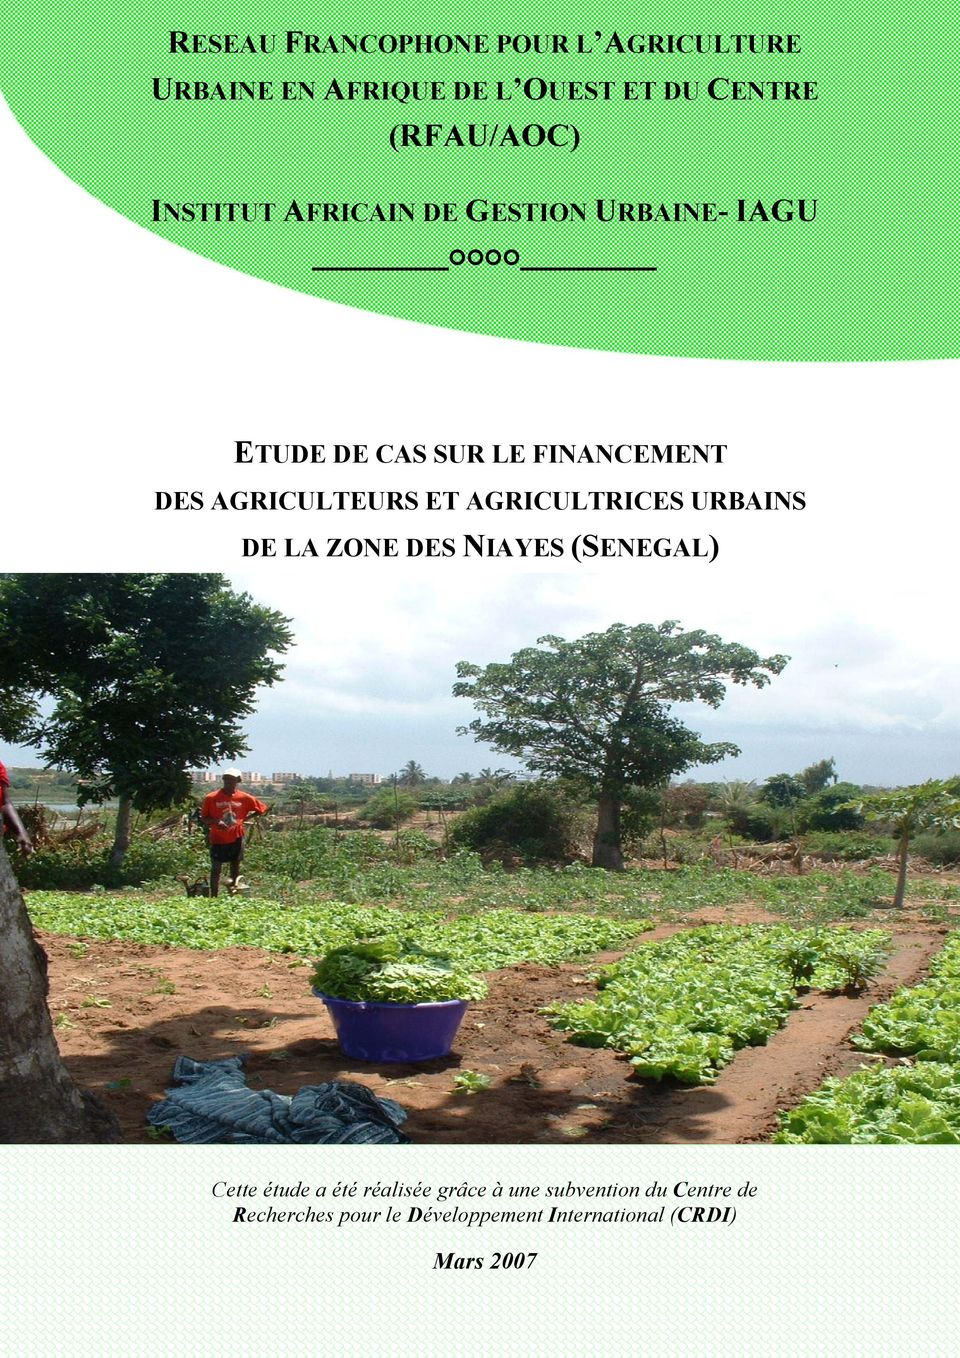 ET AGRICULTRICES URBAINS DE LA ZONE DES NIAYES (SENEGAL) Cette étude a été réalisée grâce à